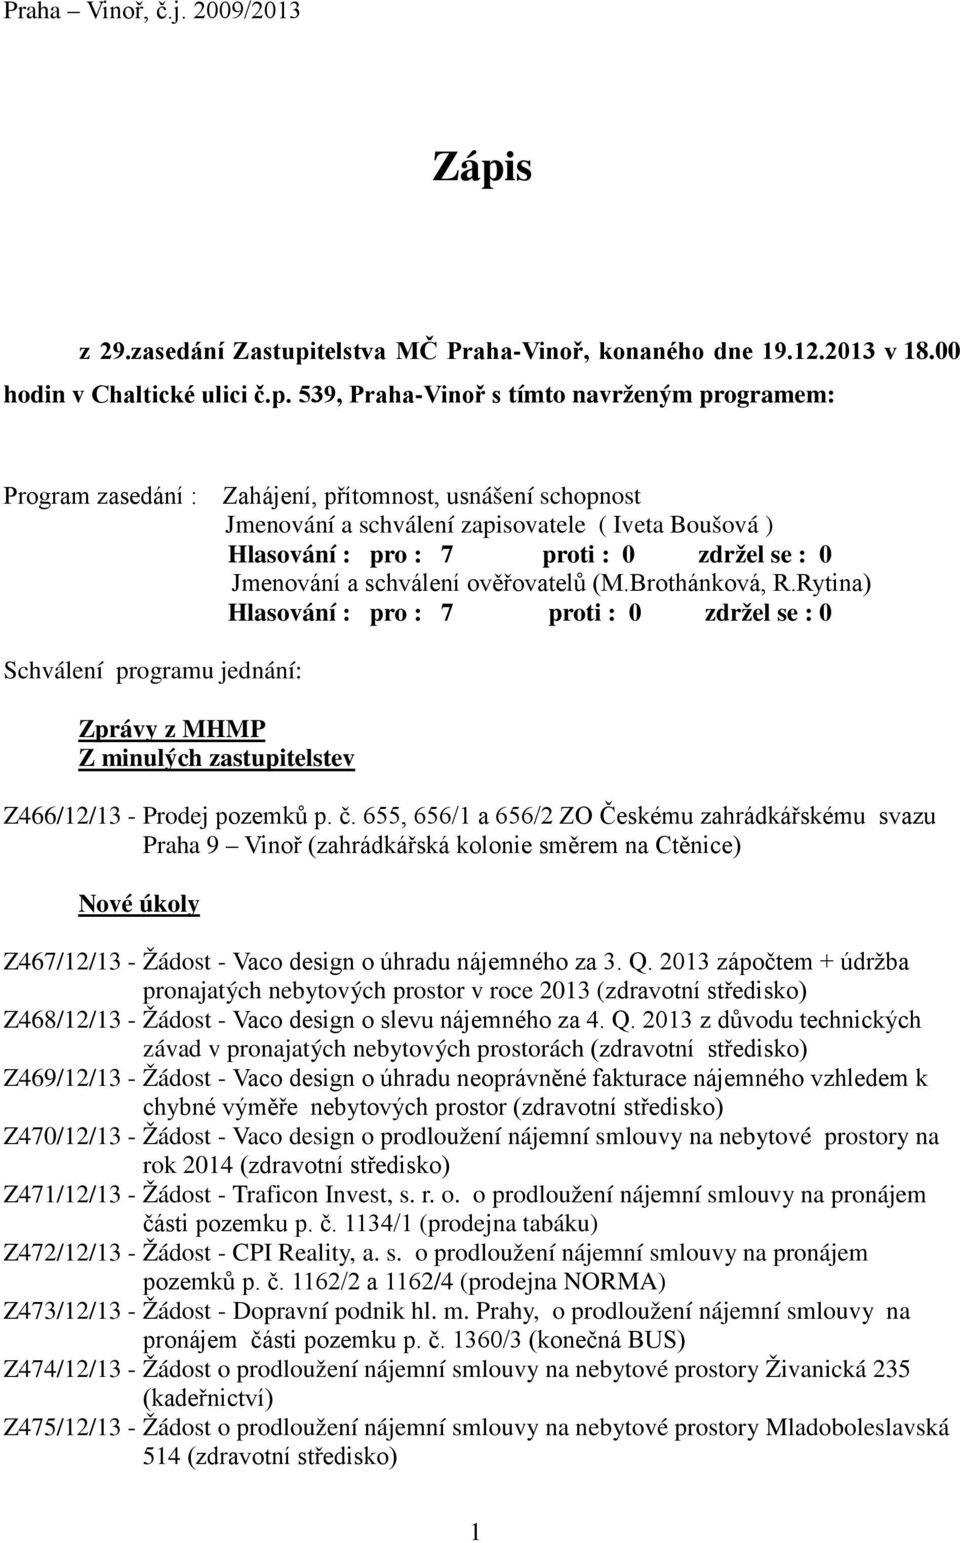 telstva MČ Praha-Vinoř, konaného dne 19.12.2013 v 18.00 hodin v Chaltické ulici č.p.